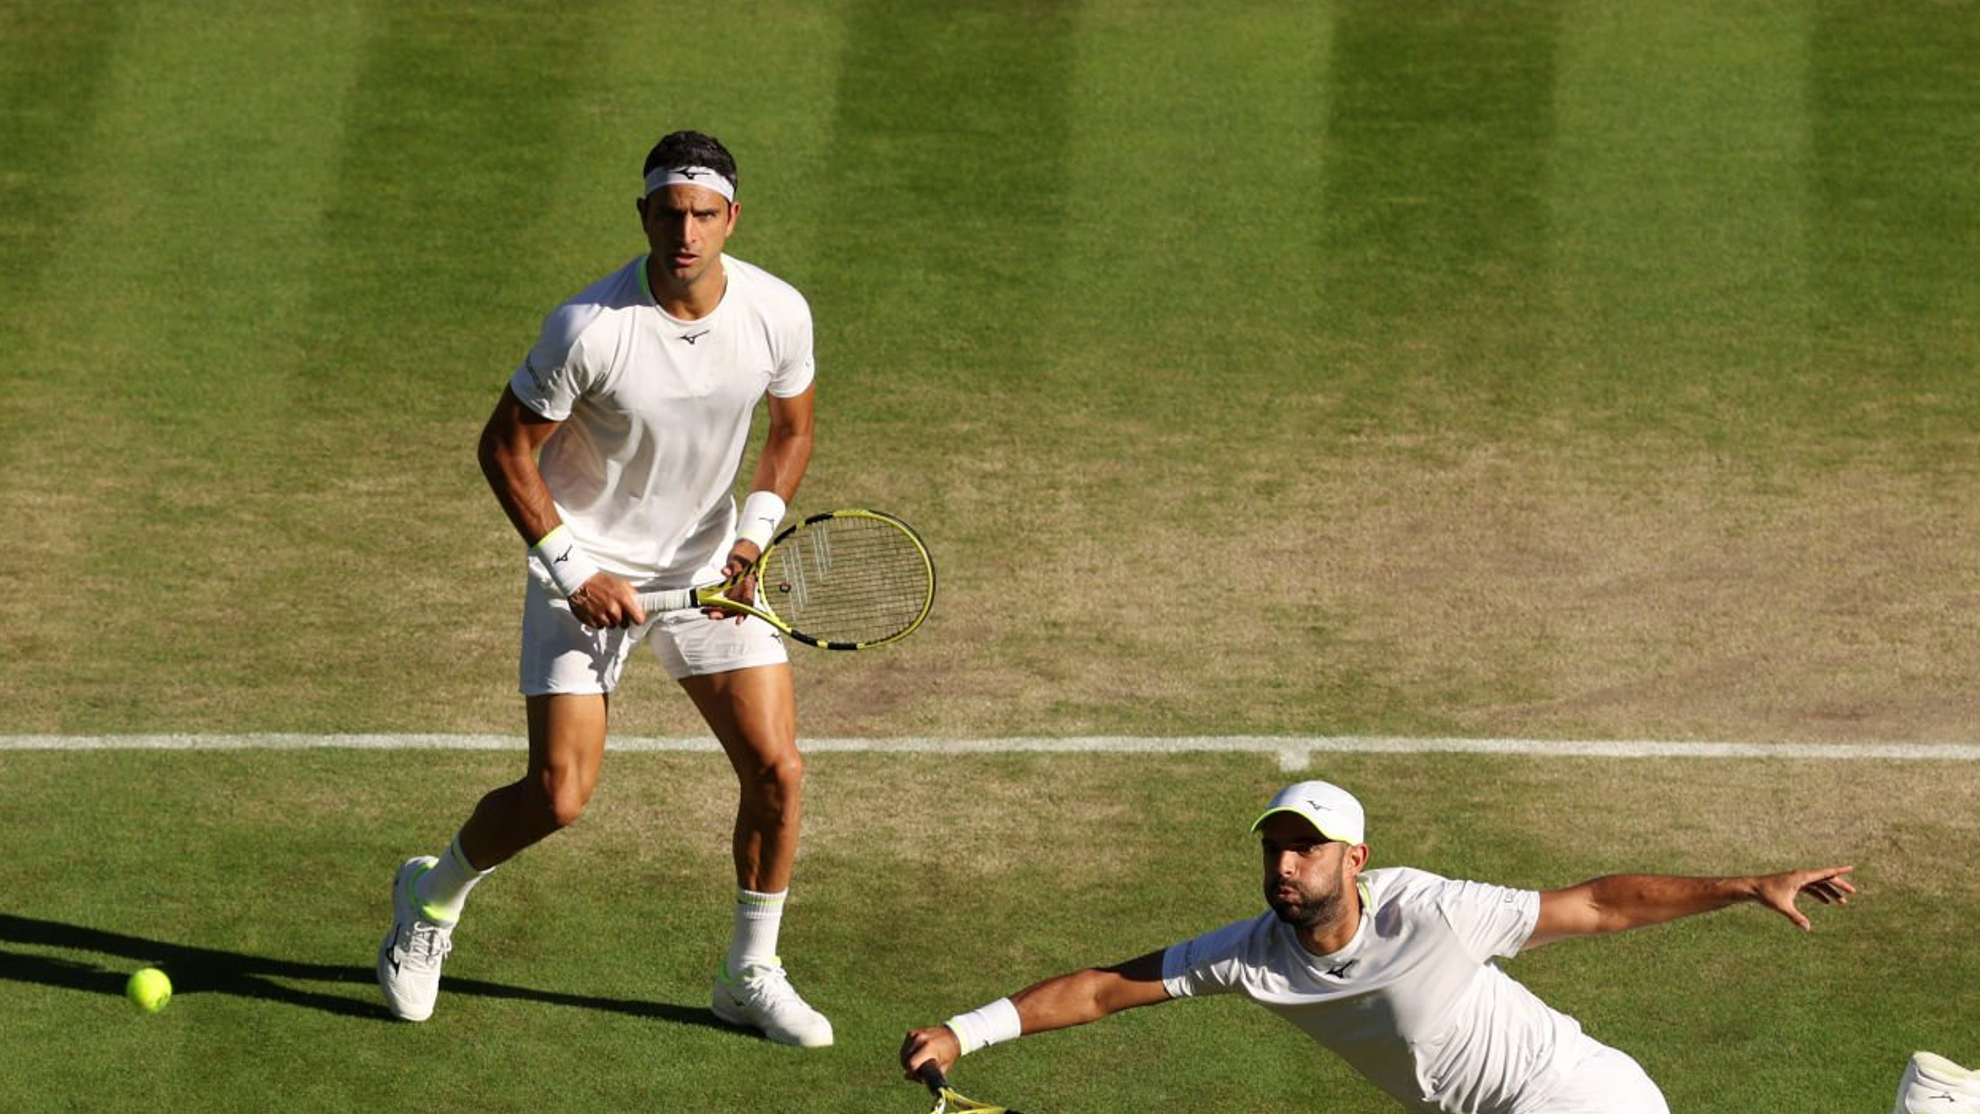 Wimbledon Hoy: Juan Sebastin Cabal y Robert Farah se quedan con la miel en los labios